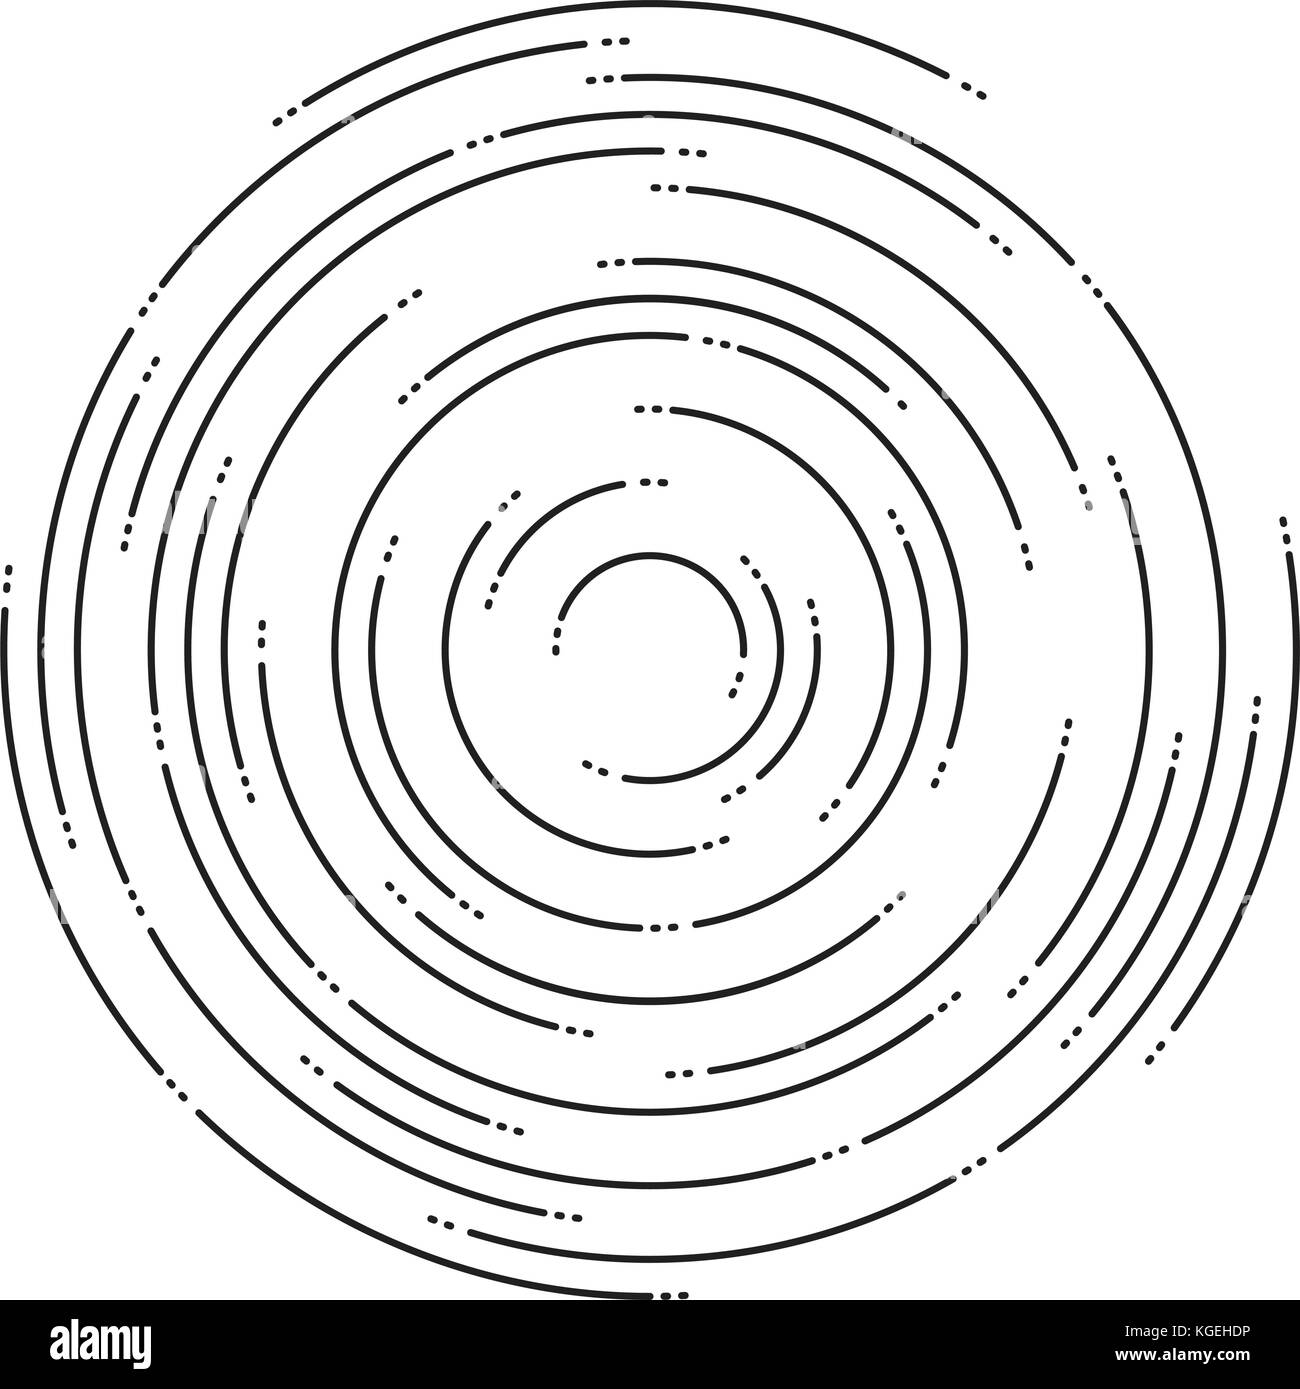 Vettore sfondo astratto di ripple concentrici cerchi. linee circolari motivo grafico. linea tratteggiata increspature Illustrazione Vettoriale